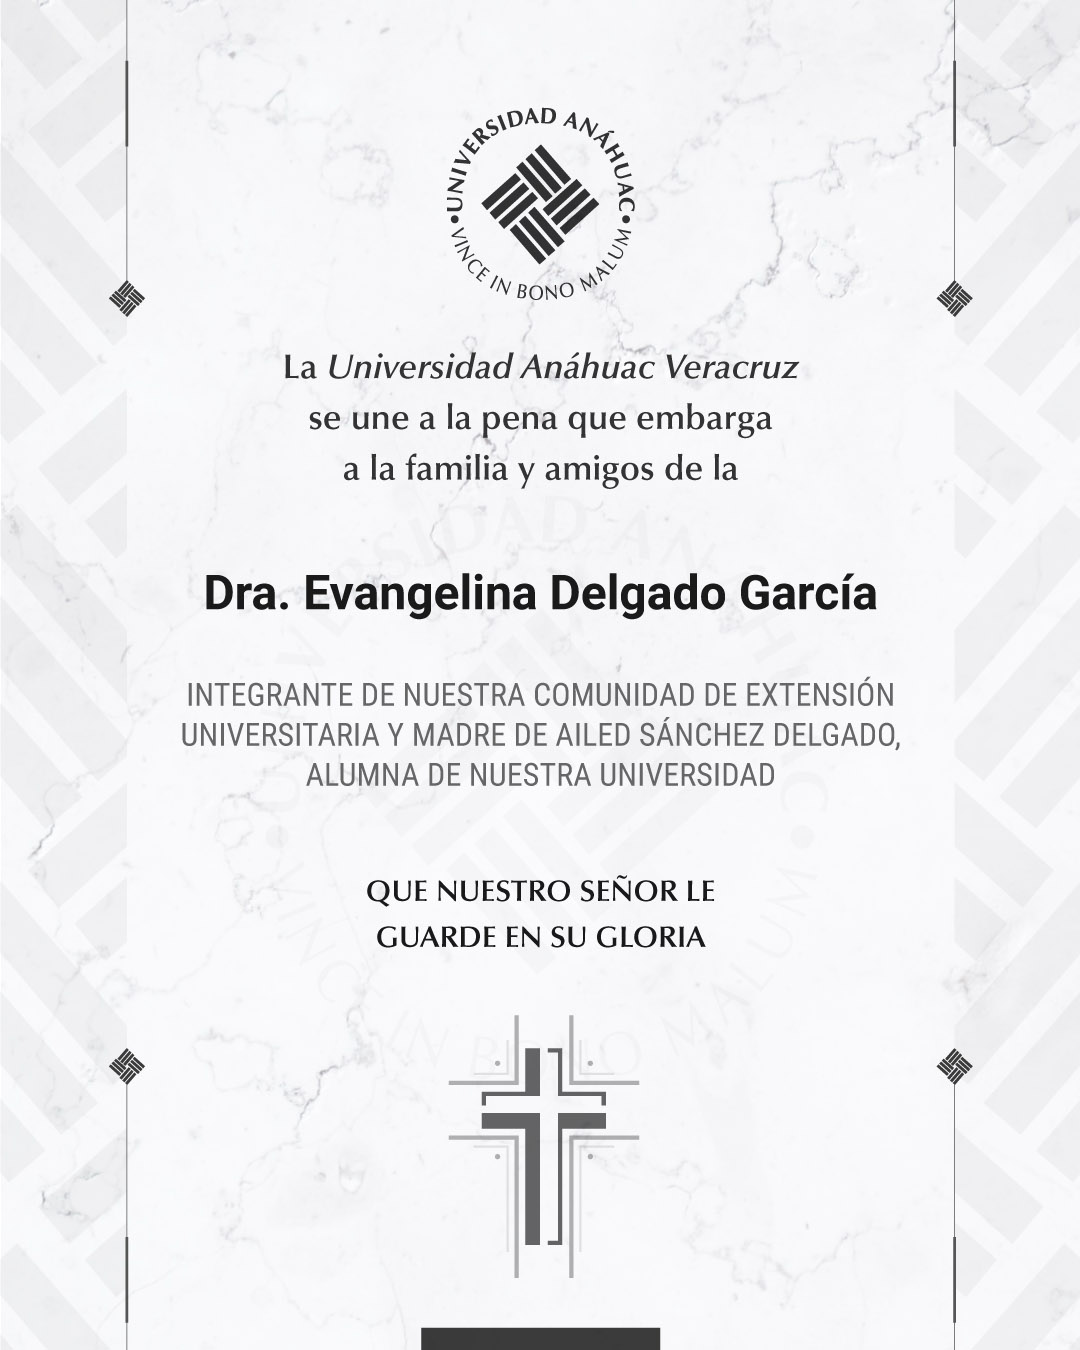 2 / 18 - Dra. Evangelina Delgado García